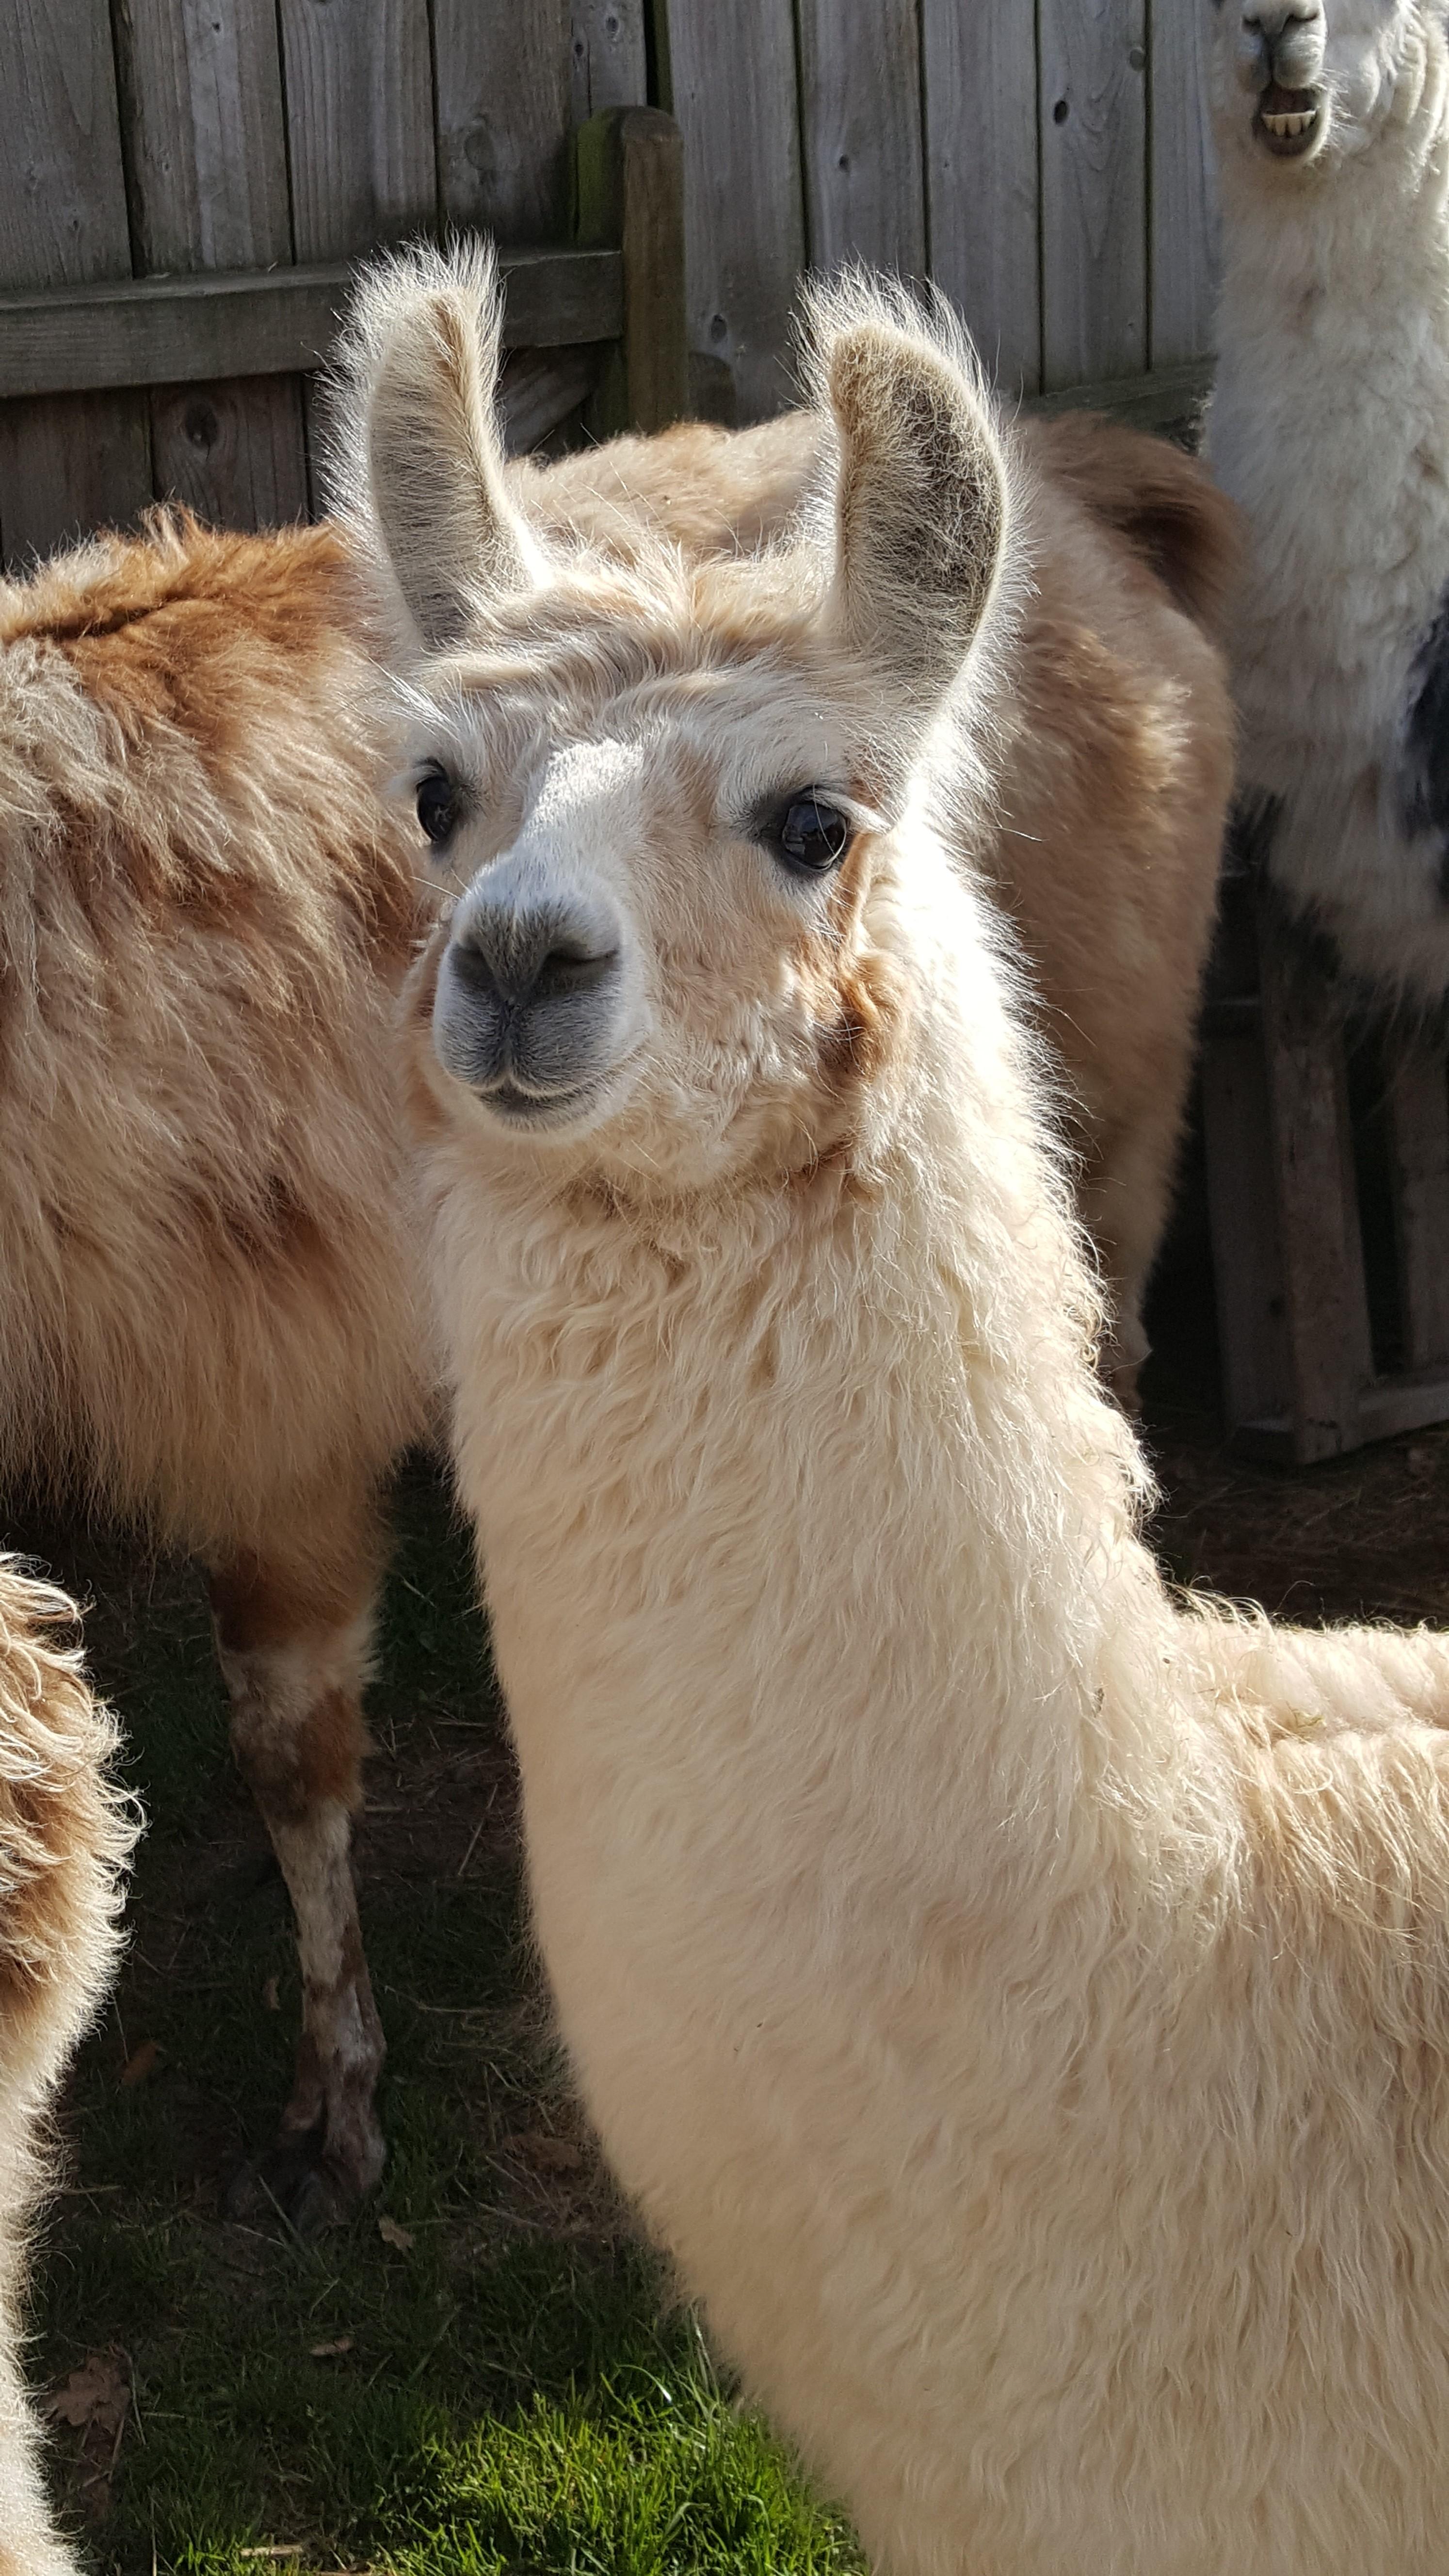 Merlin | Watertown Llamas | Llamas for sale - Llama breeder